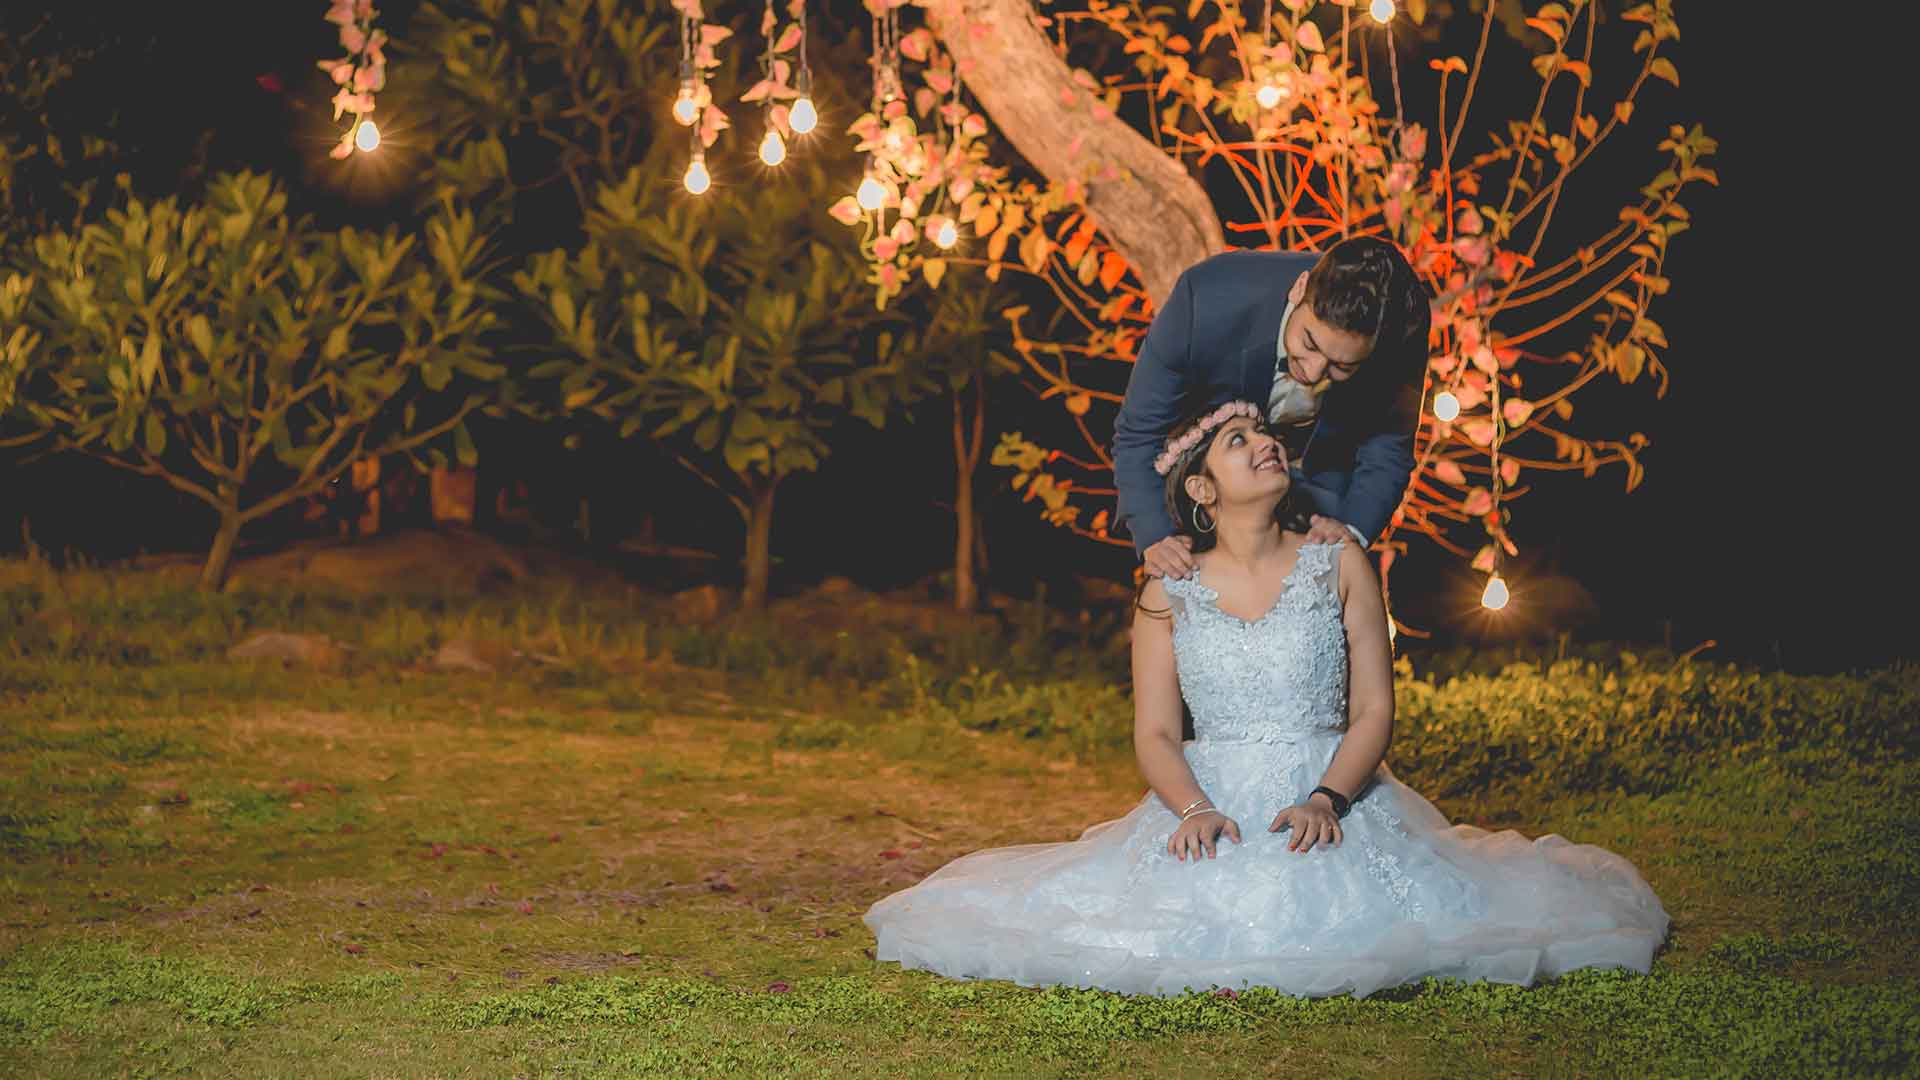 Budget Pre-Wedding Photographer Noida Delhi NCR || Framographer Inc.